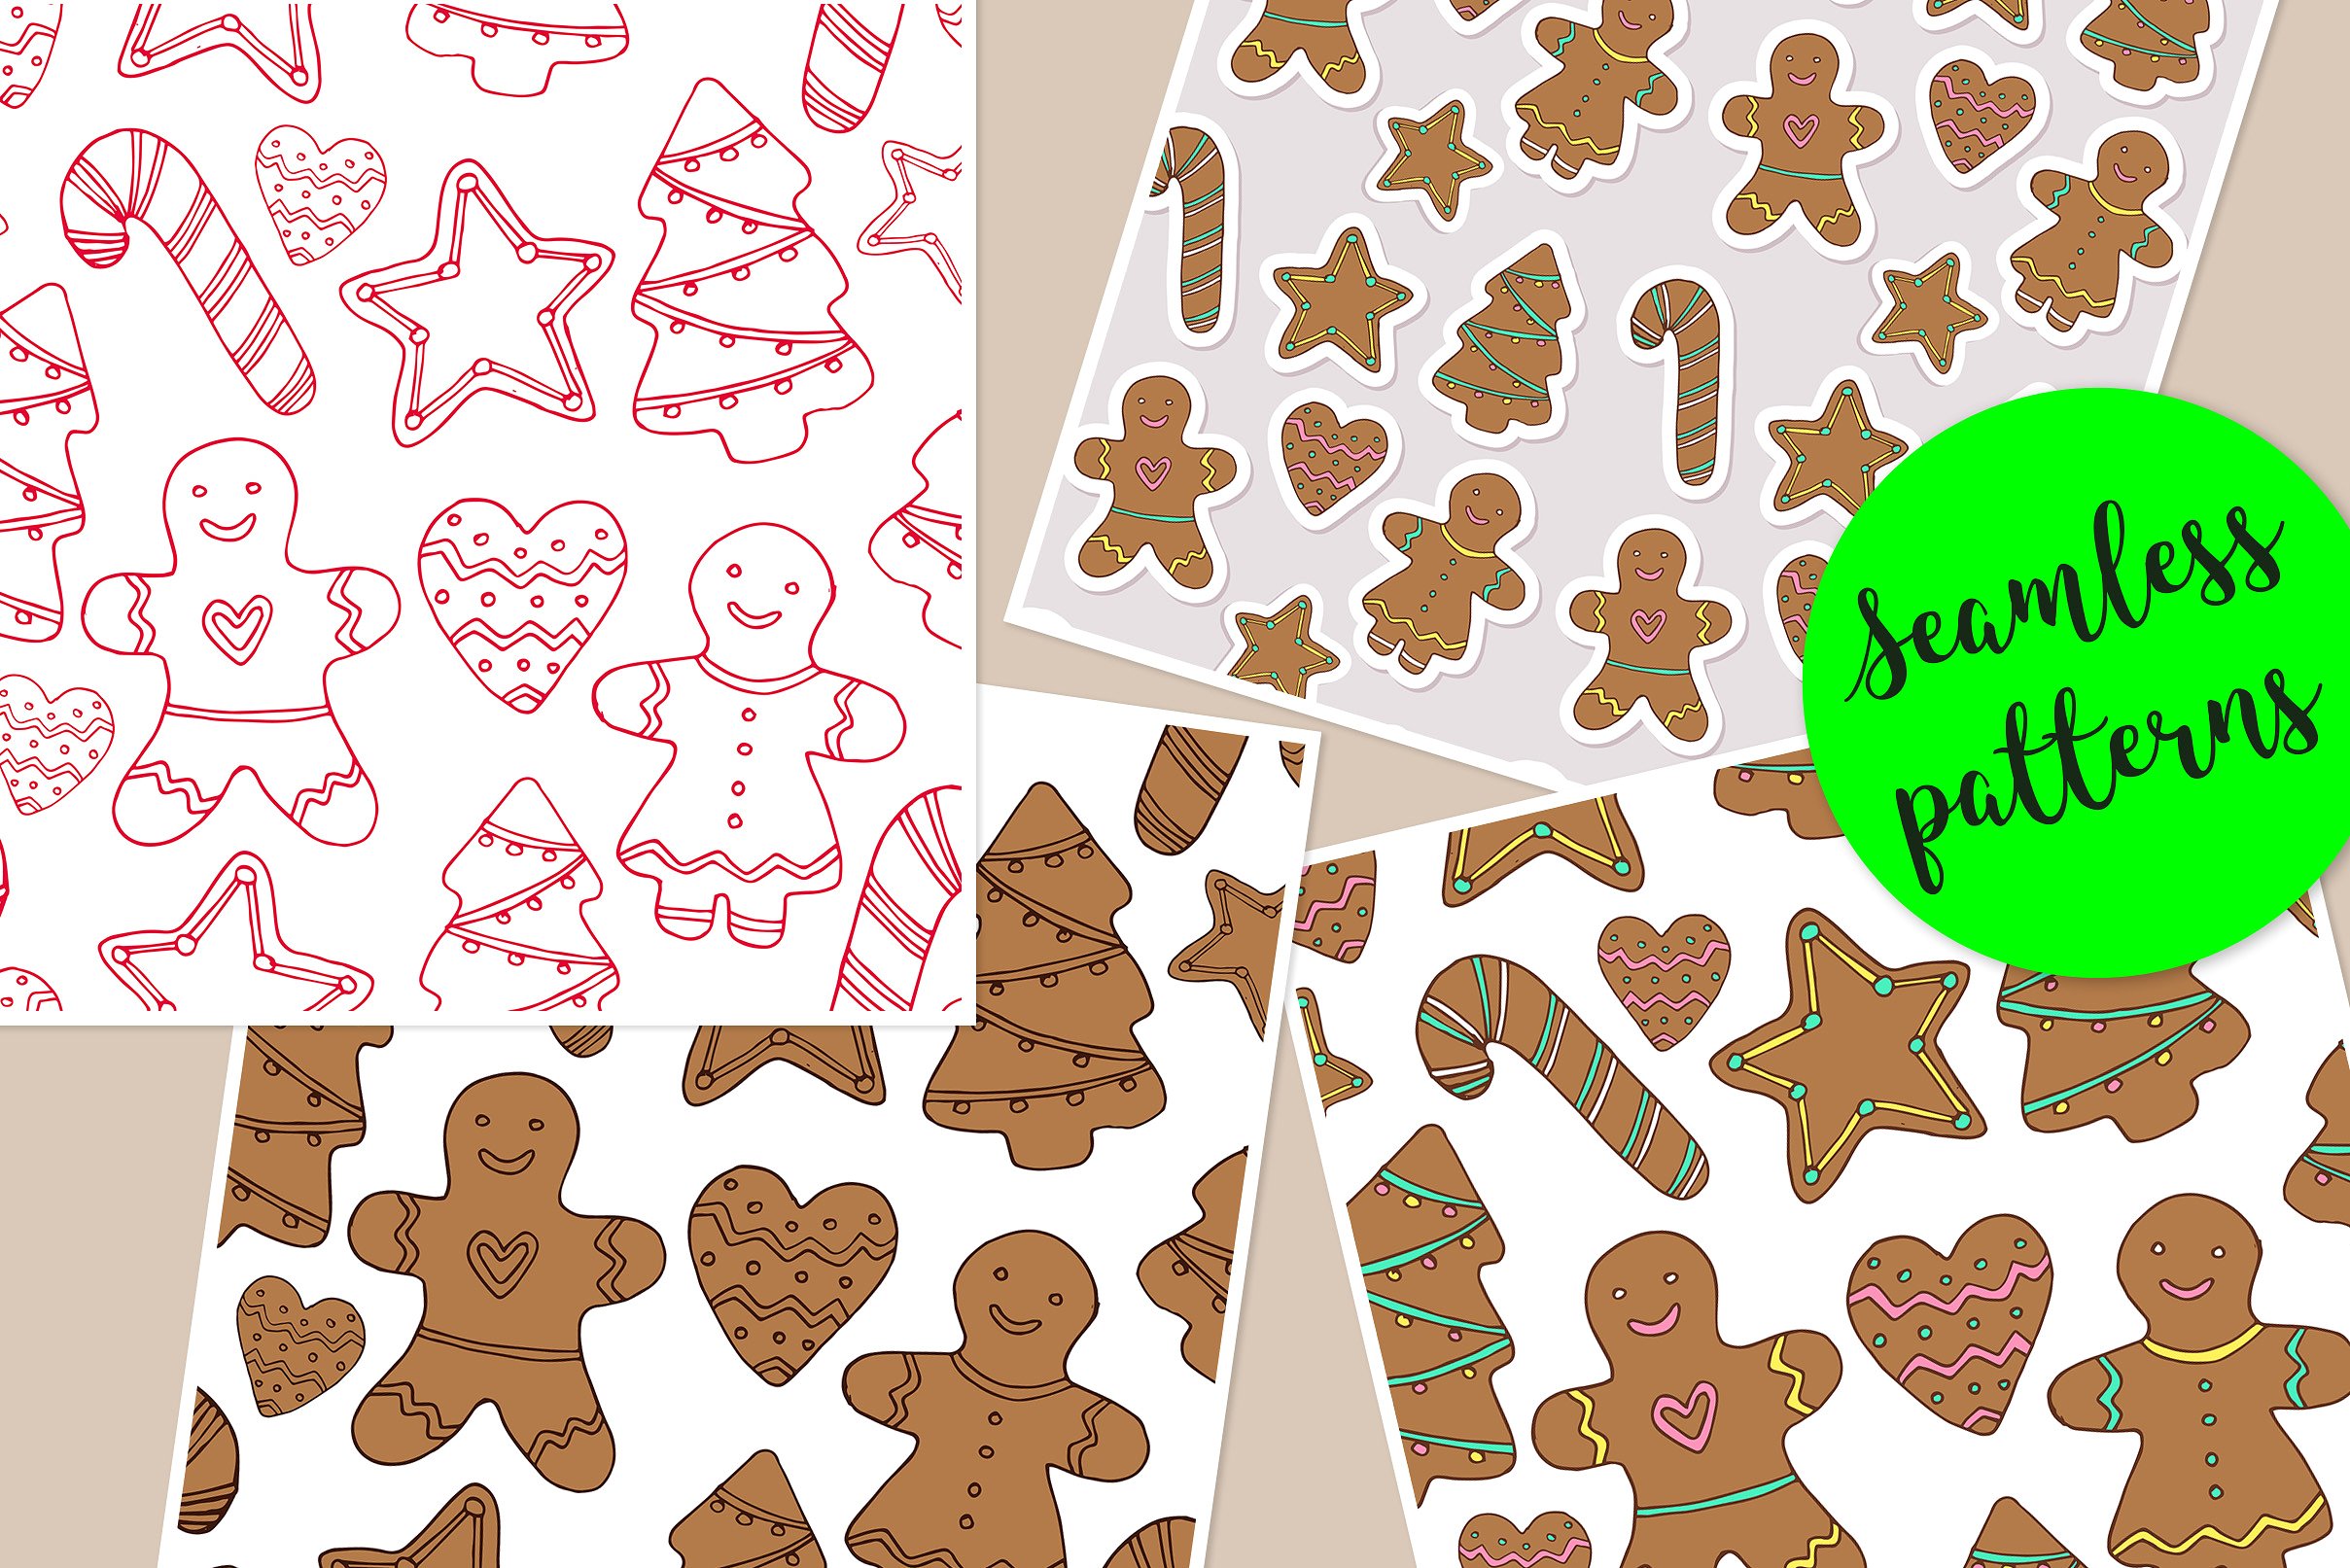 可爱的圣诞节手绘饼干矢量素材下载[ai,eps]插图(4)